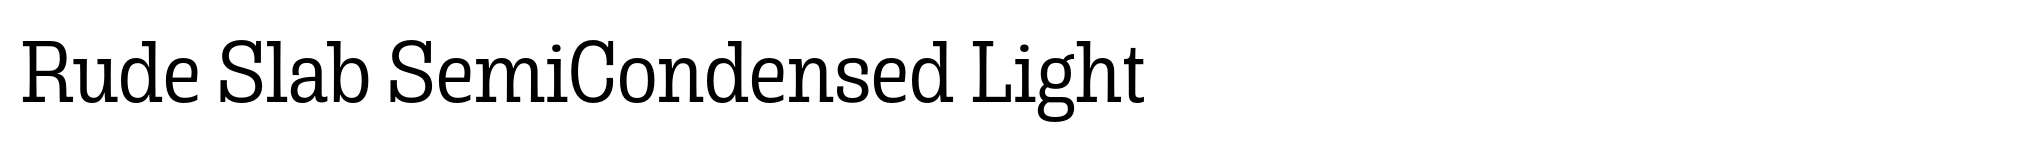 Rude Slab SemiCondensed Light image